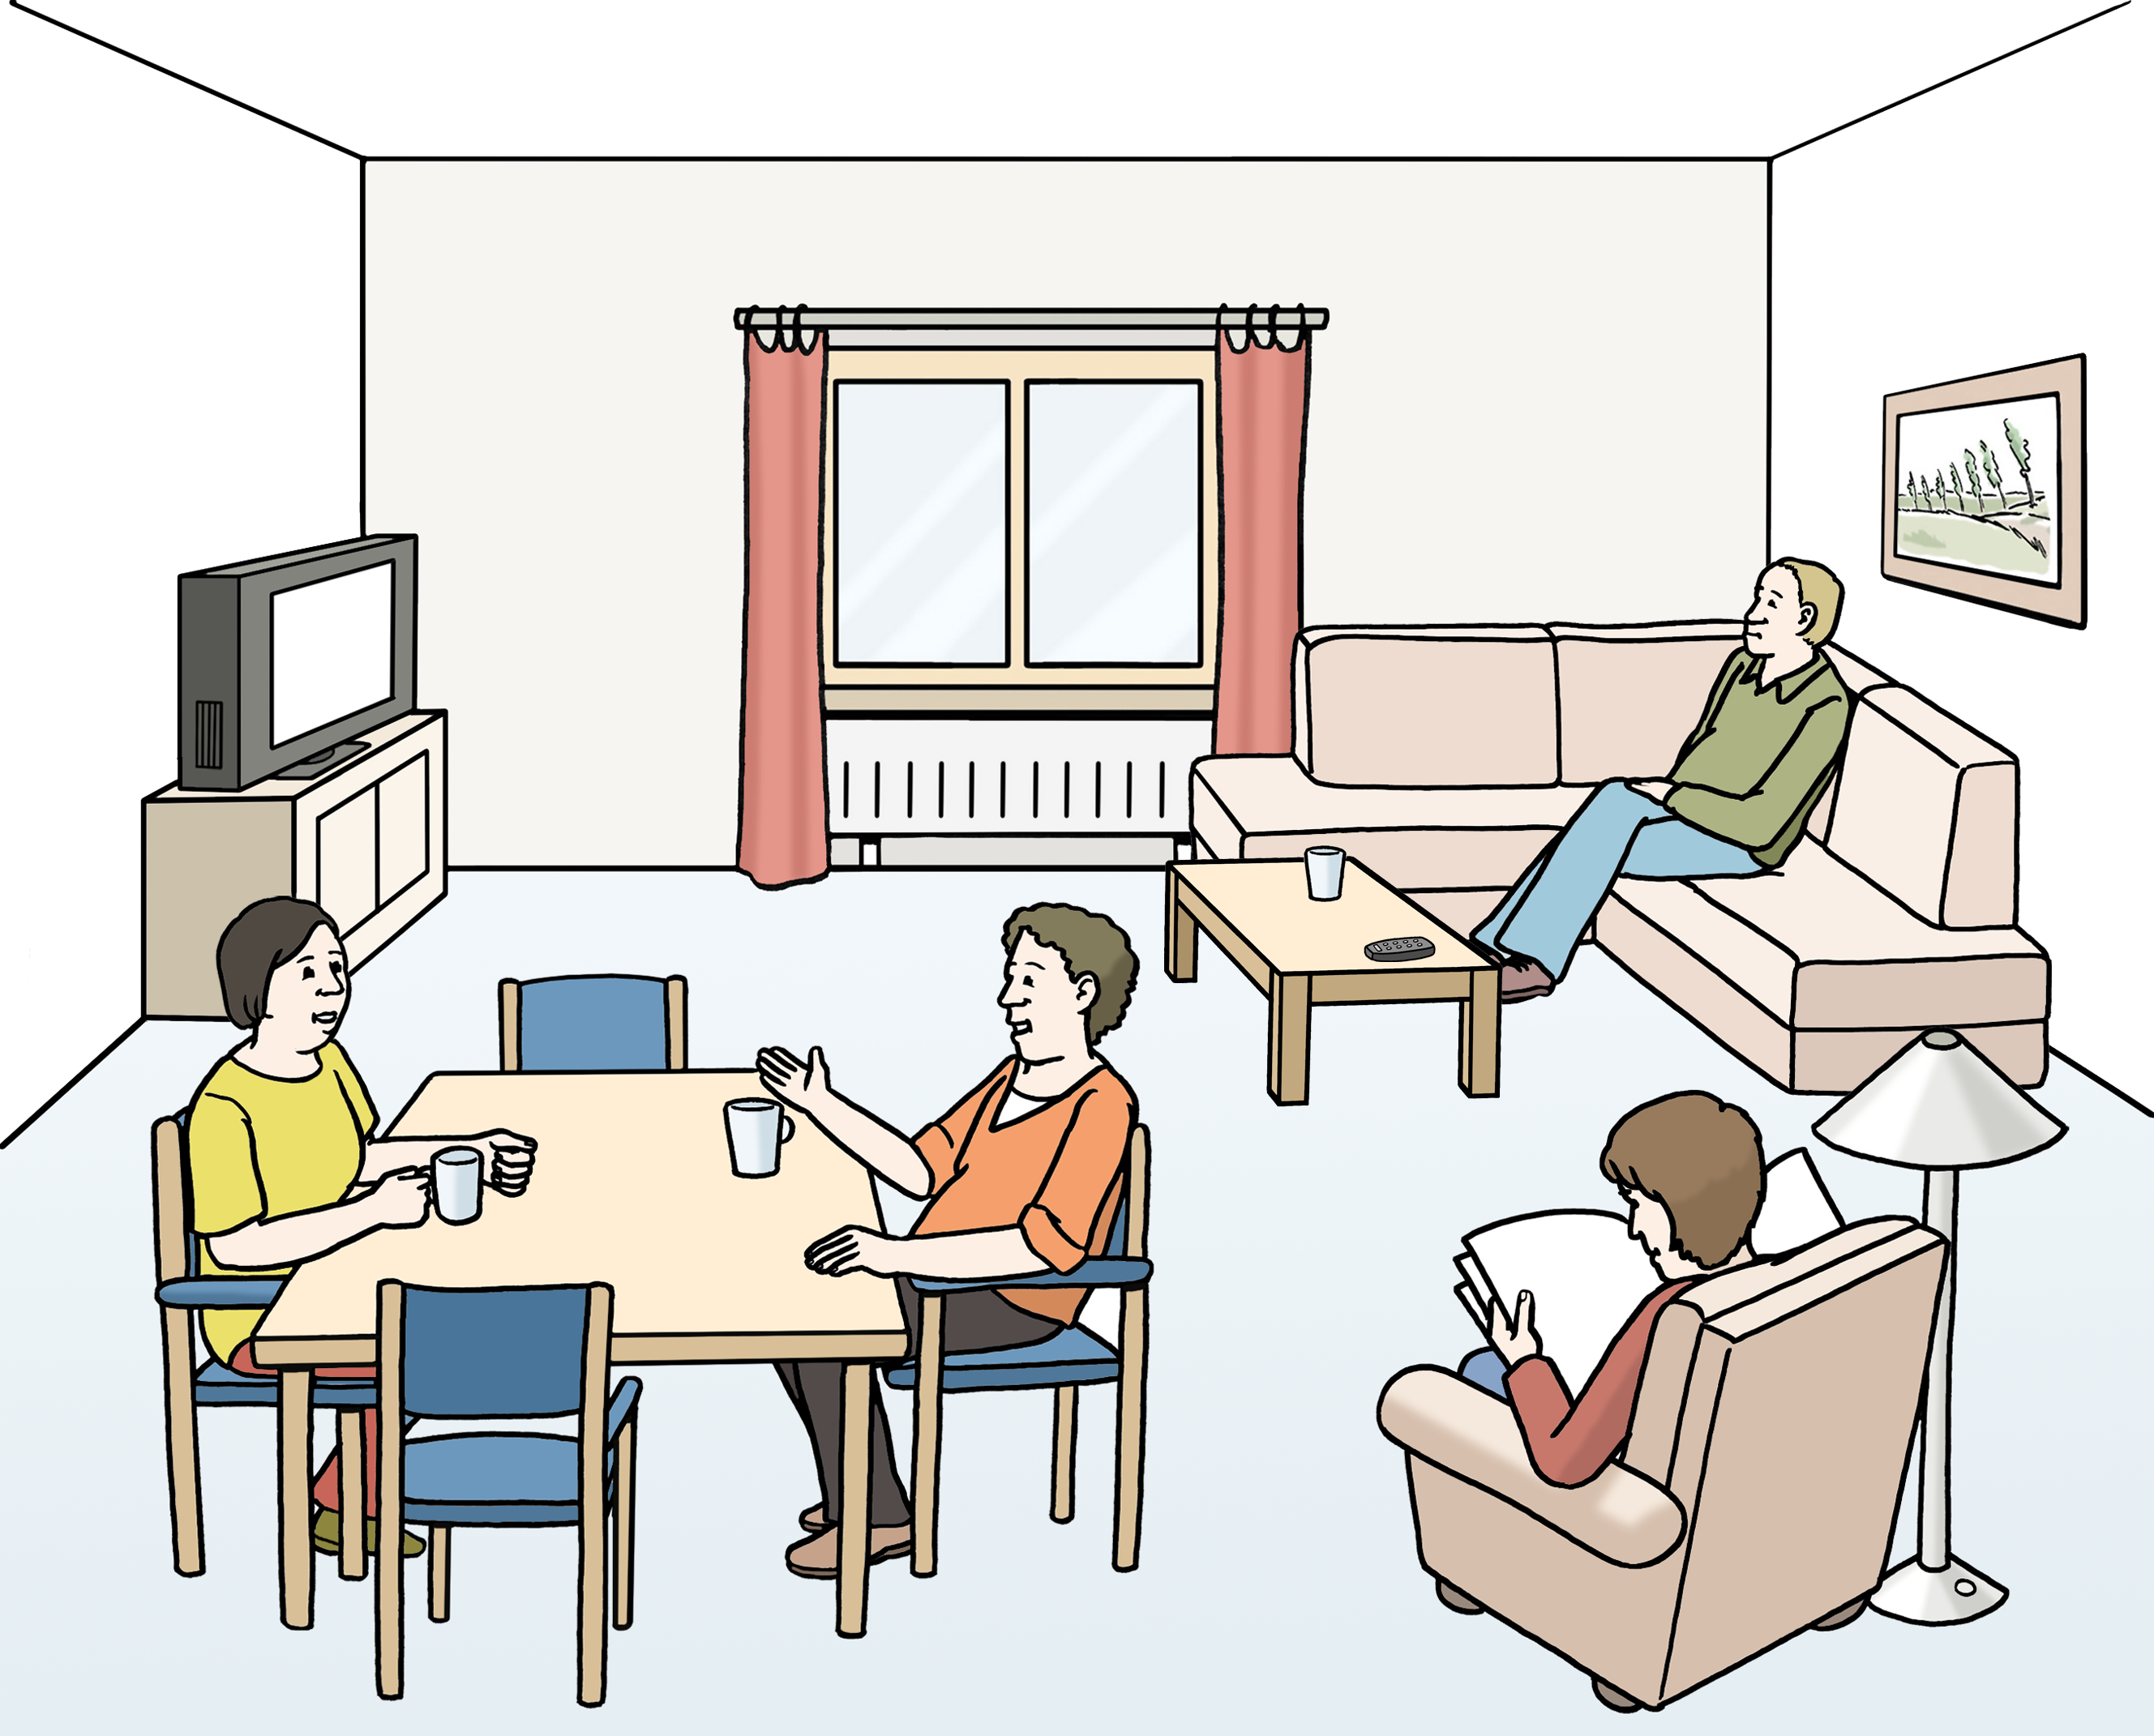 Bildbeschreibung: In einem Gemeinschaftsraum sitzen mehrere Menschen, die unterschiedliche Sachen machen. Einer guckt Fernsehen, zwei trinken Kaffee und unterhalten sich und einer liest.